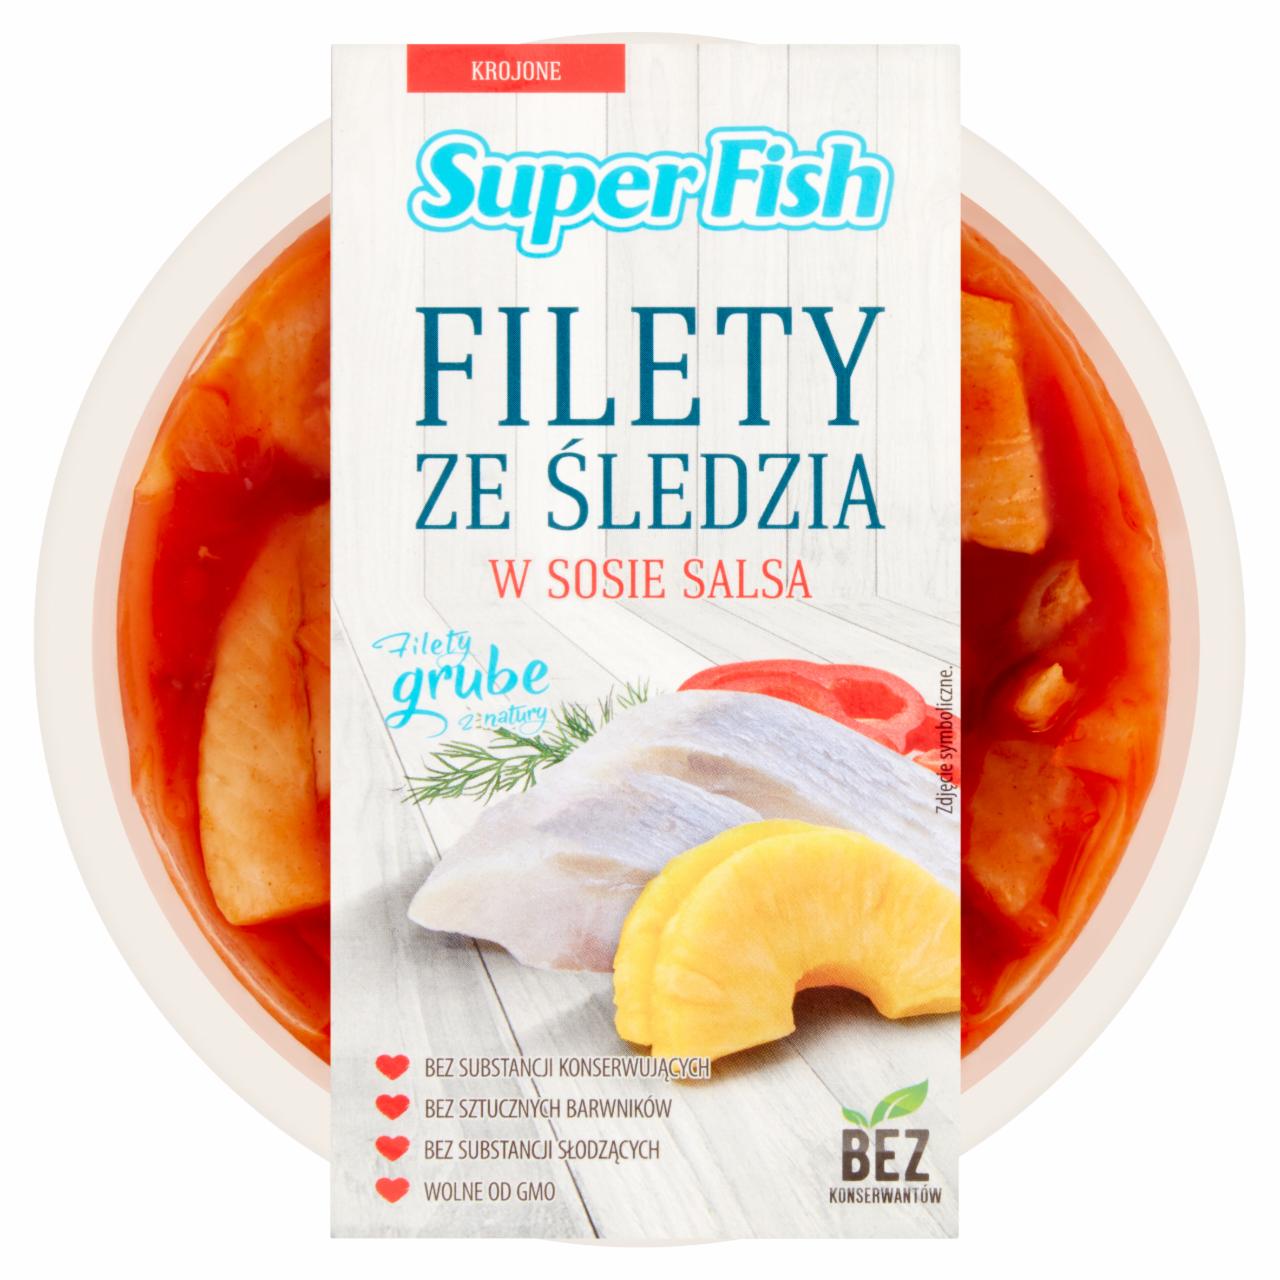 Zdjęcia - SuperFish Filety ze śledzia w sosie salsa 180 g